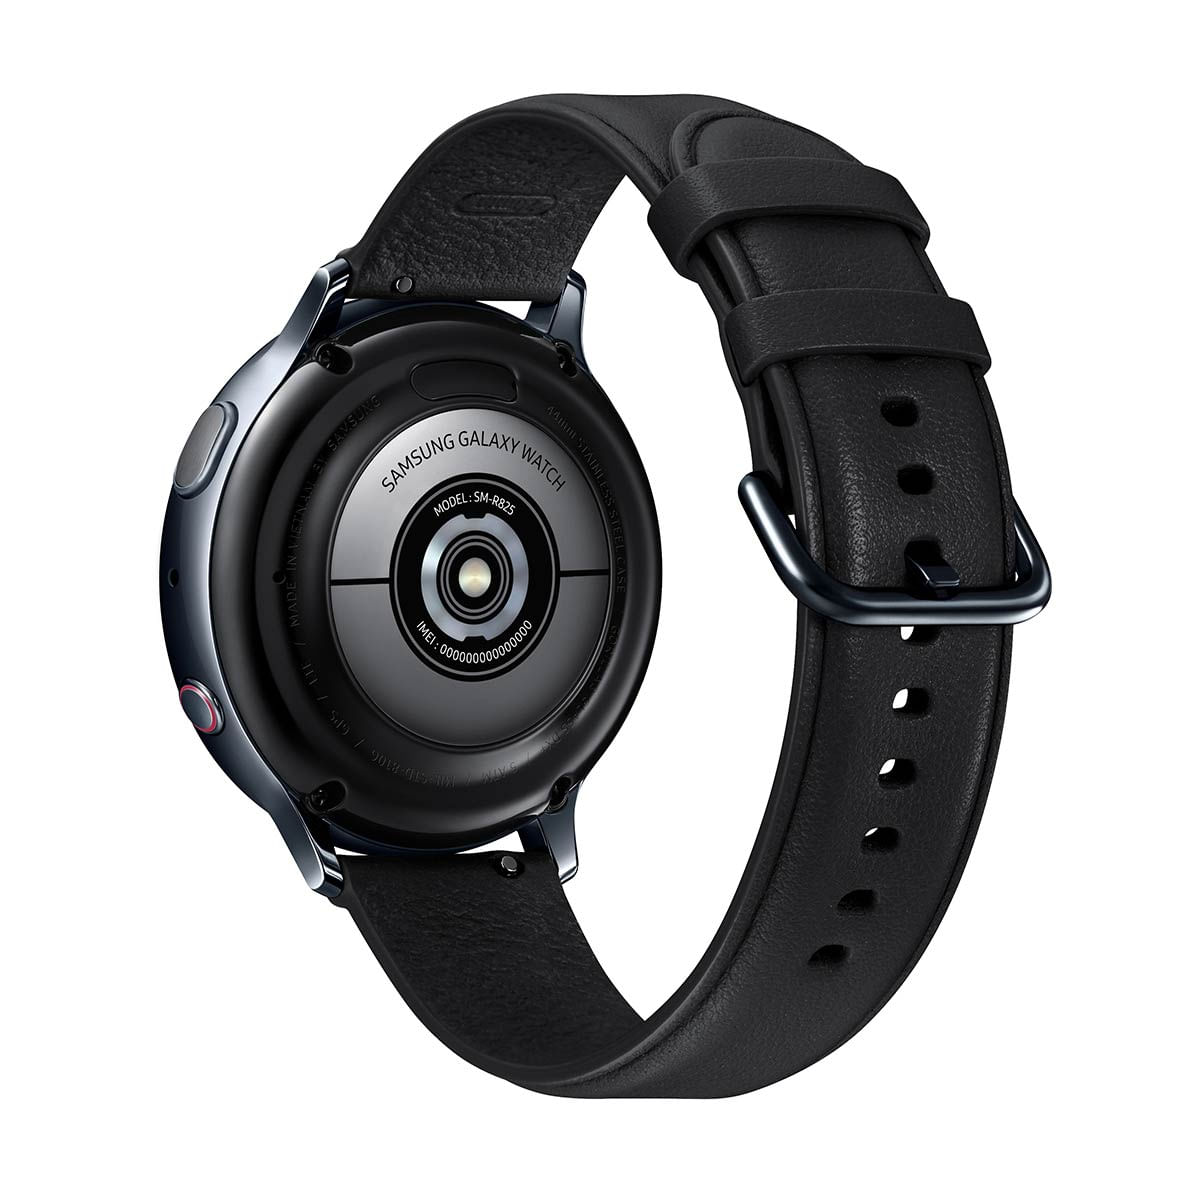 kit-smartwatch-samsung-2-pecas--galaxy-watch3-41mm-lte-prata---galaxy-active2-lte-44mm-preto-5.jpg